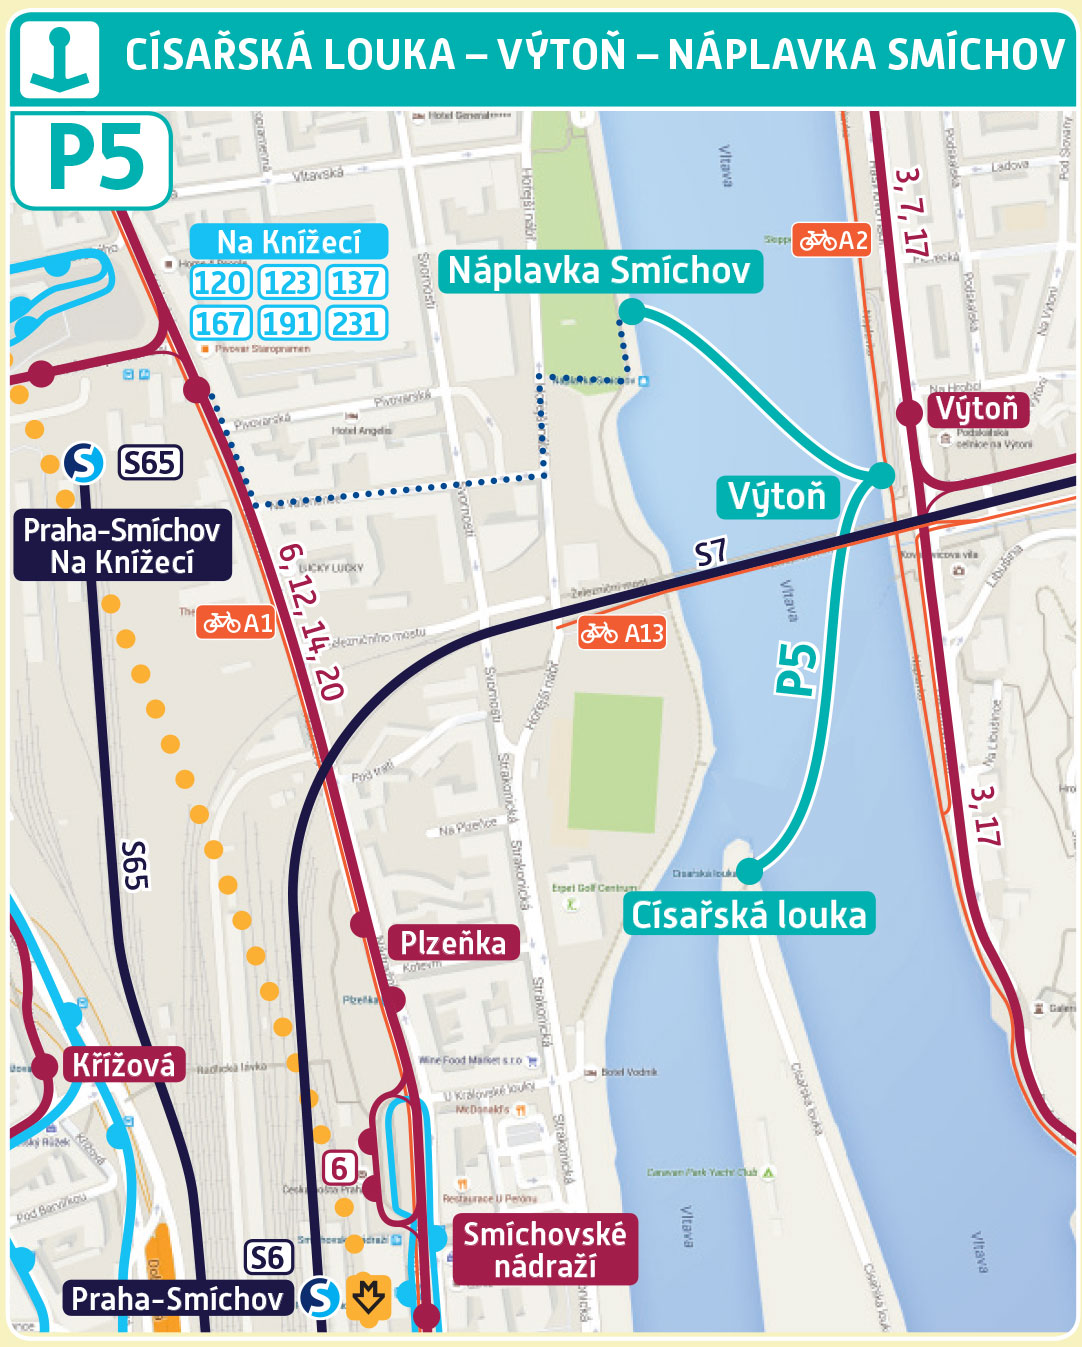 Mapa trasy přívozu P5 | Pražské Benátky